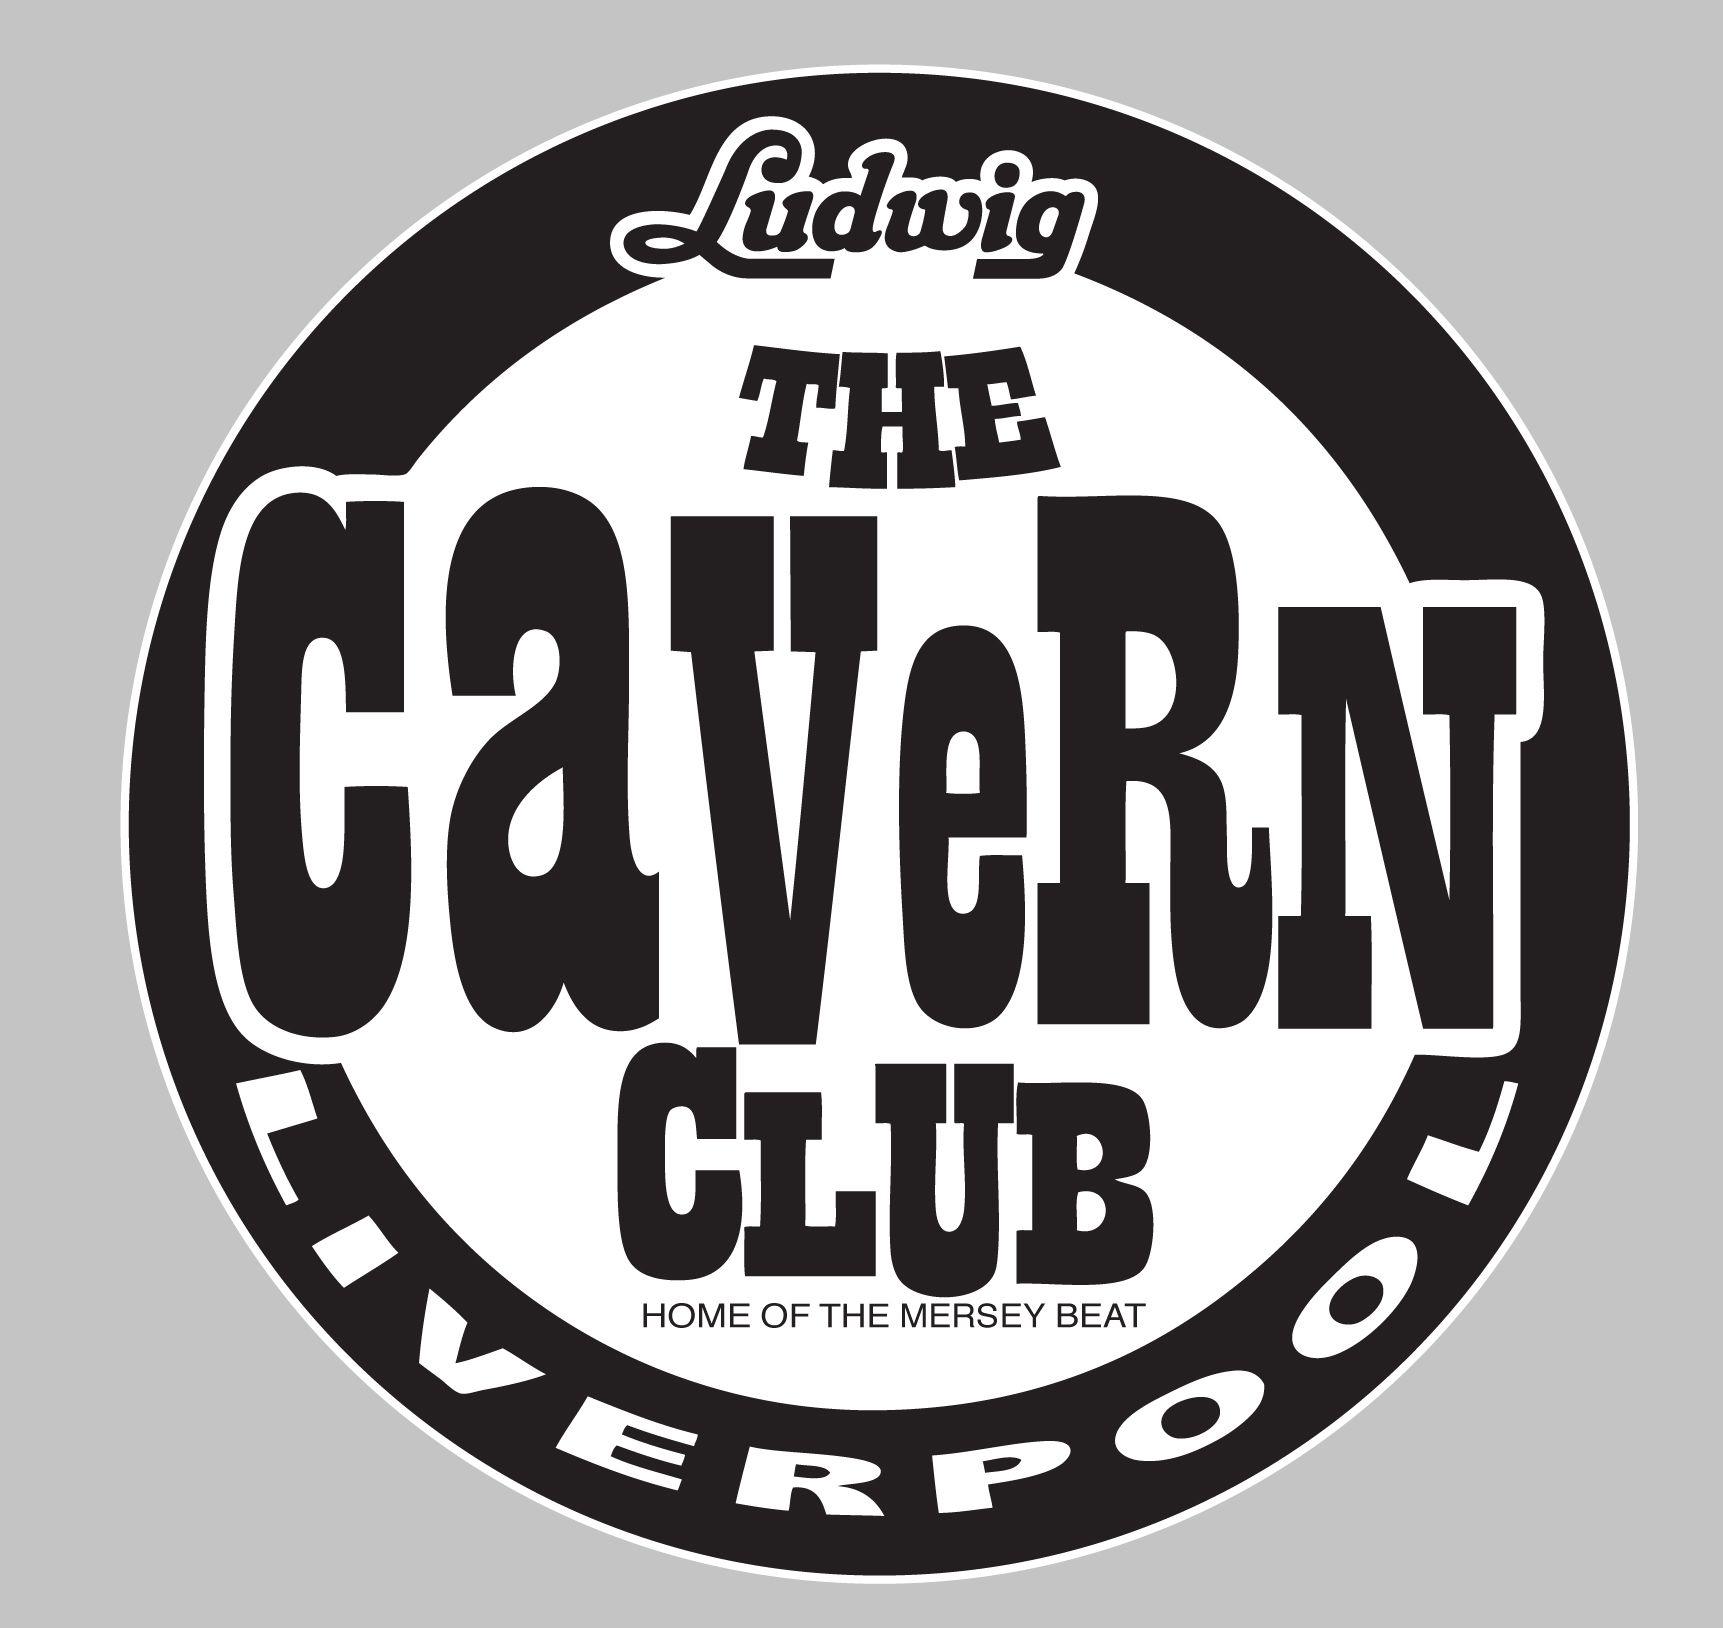 Ludwig Logo - Cavern Club Ludwig logo fridge magnet - Cavern Club